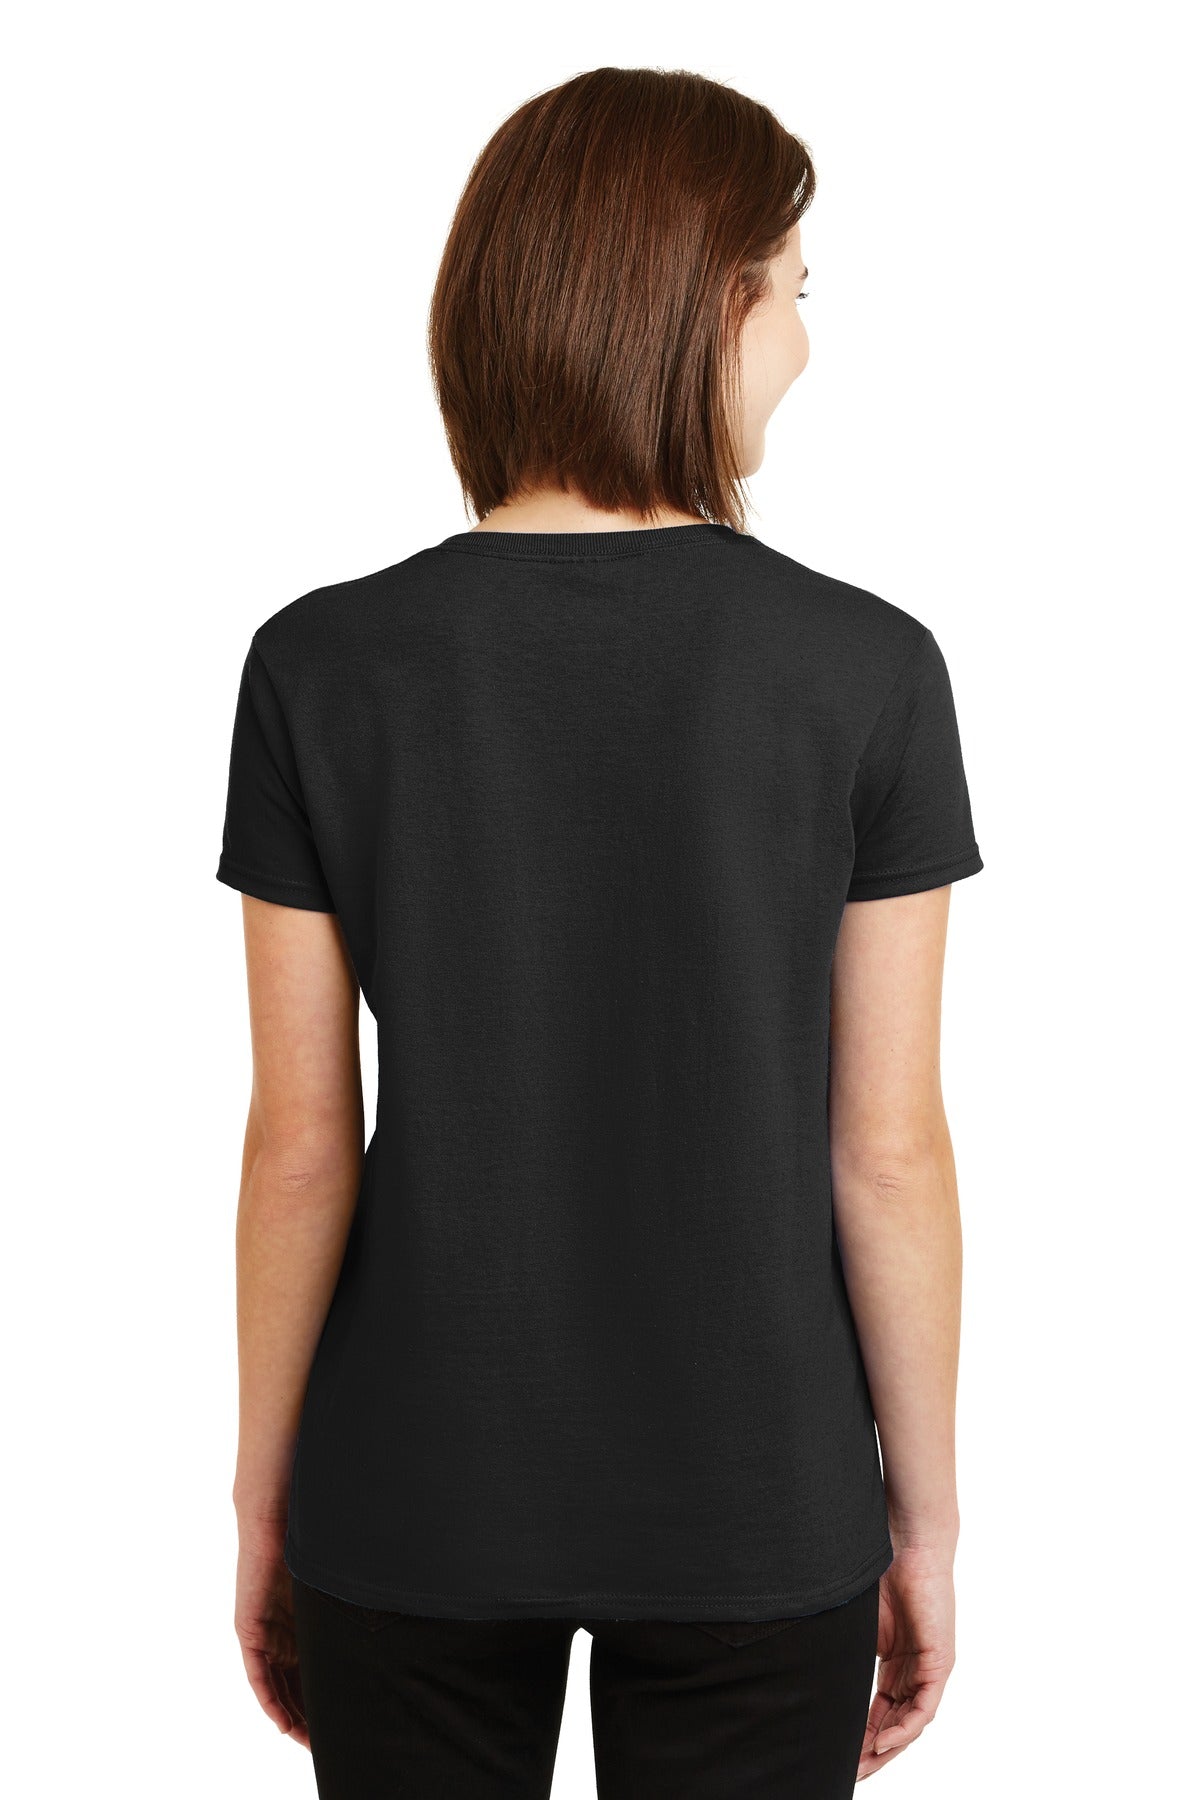 Gildan® - Ladies Ultra Cotton® 100% US Cotton T-Shirt. 2000L - DFW Impression